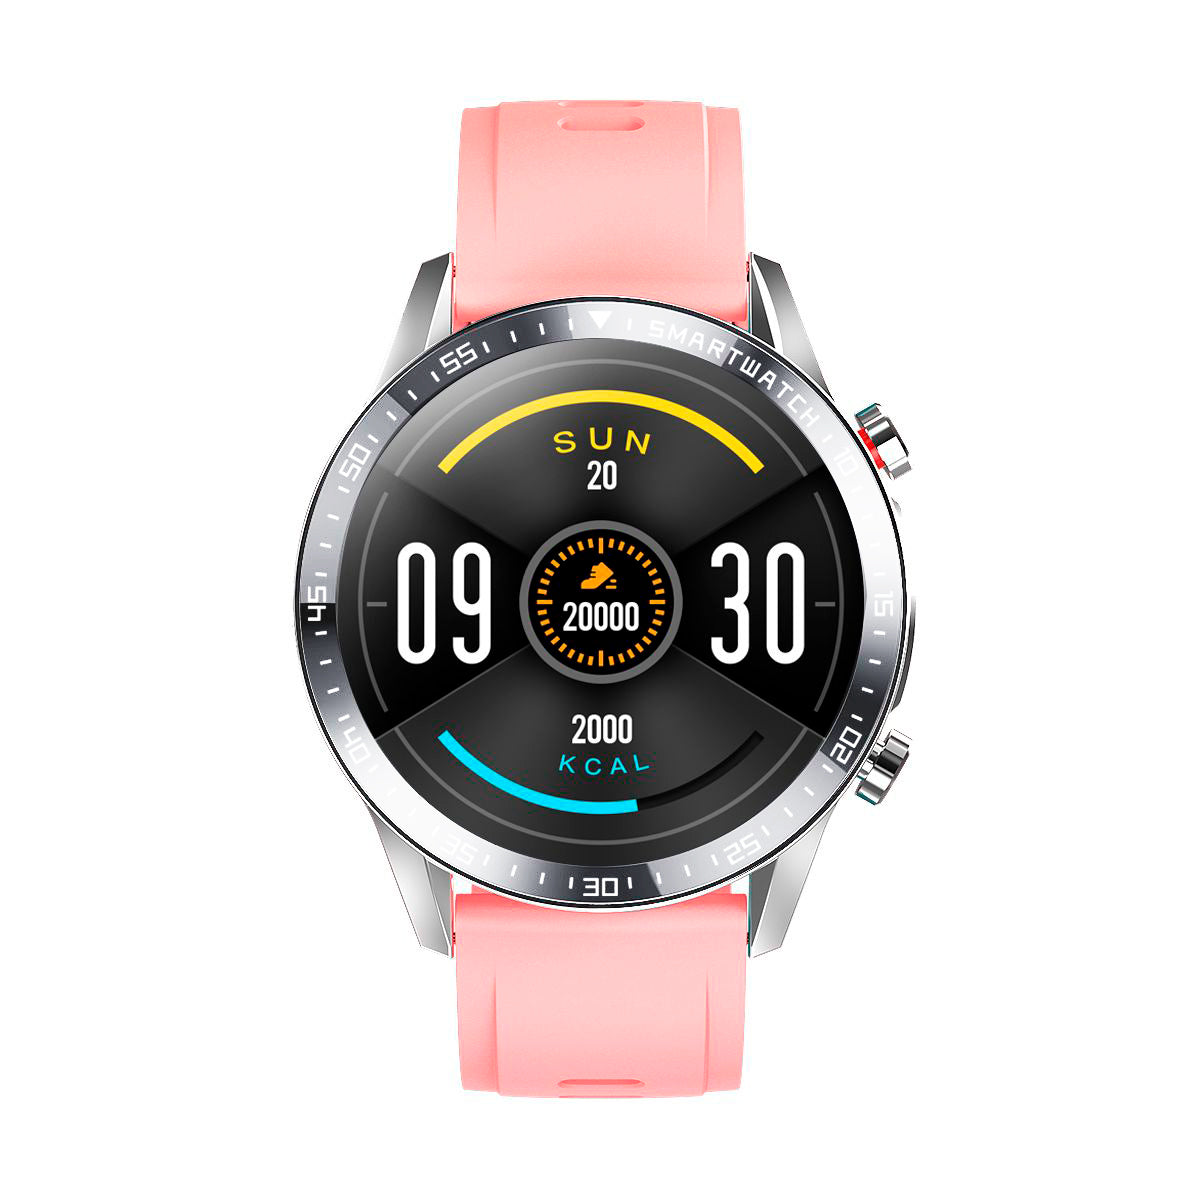 Smartwatch 24 bluetooh Color Rosa